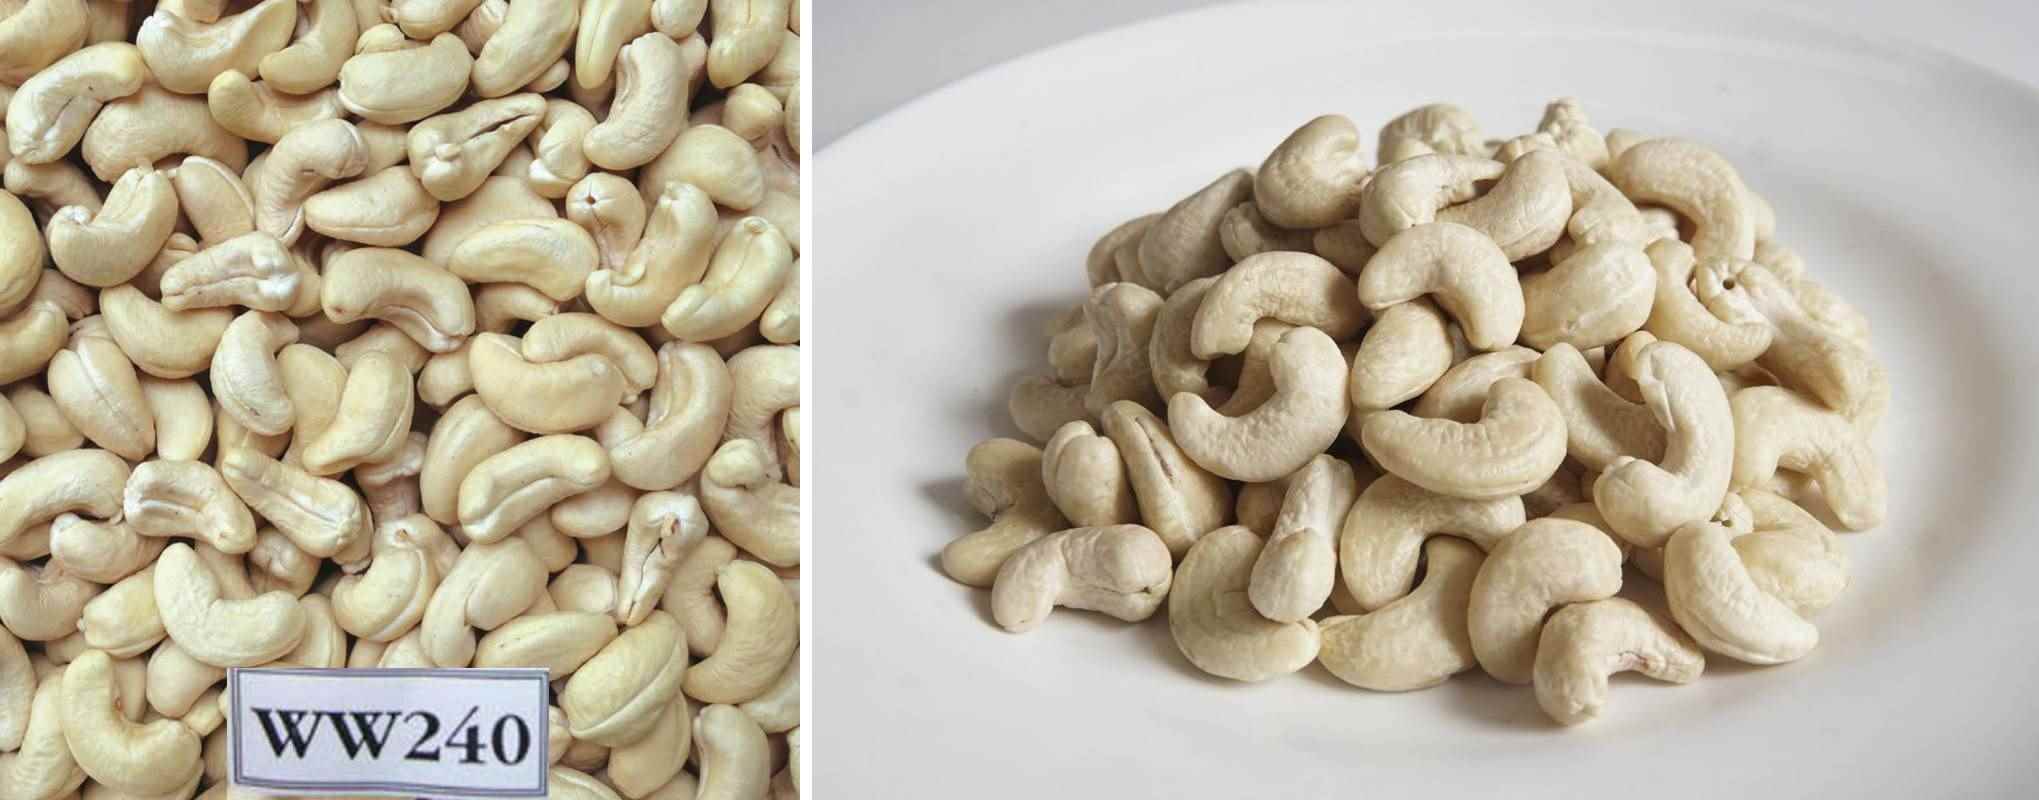 Da Cashewnüsse relativ unverdaulich und arm an Ballaststoffen sind, essen Sie Cashewnüsse vor den Hauptmahlzeiten und essen Sie mehr grünes Gemüse.